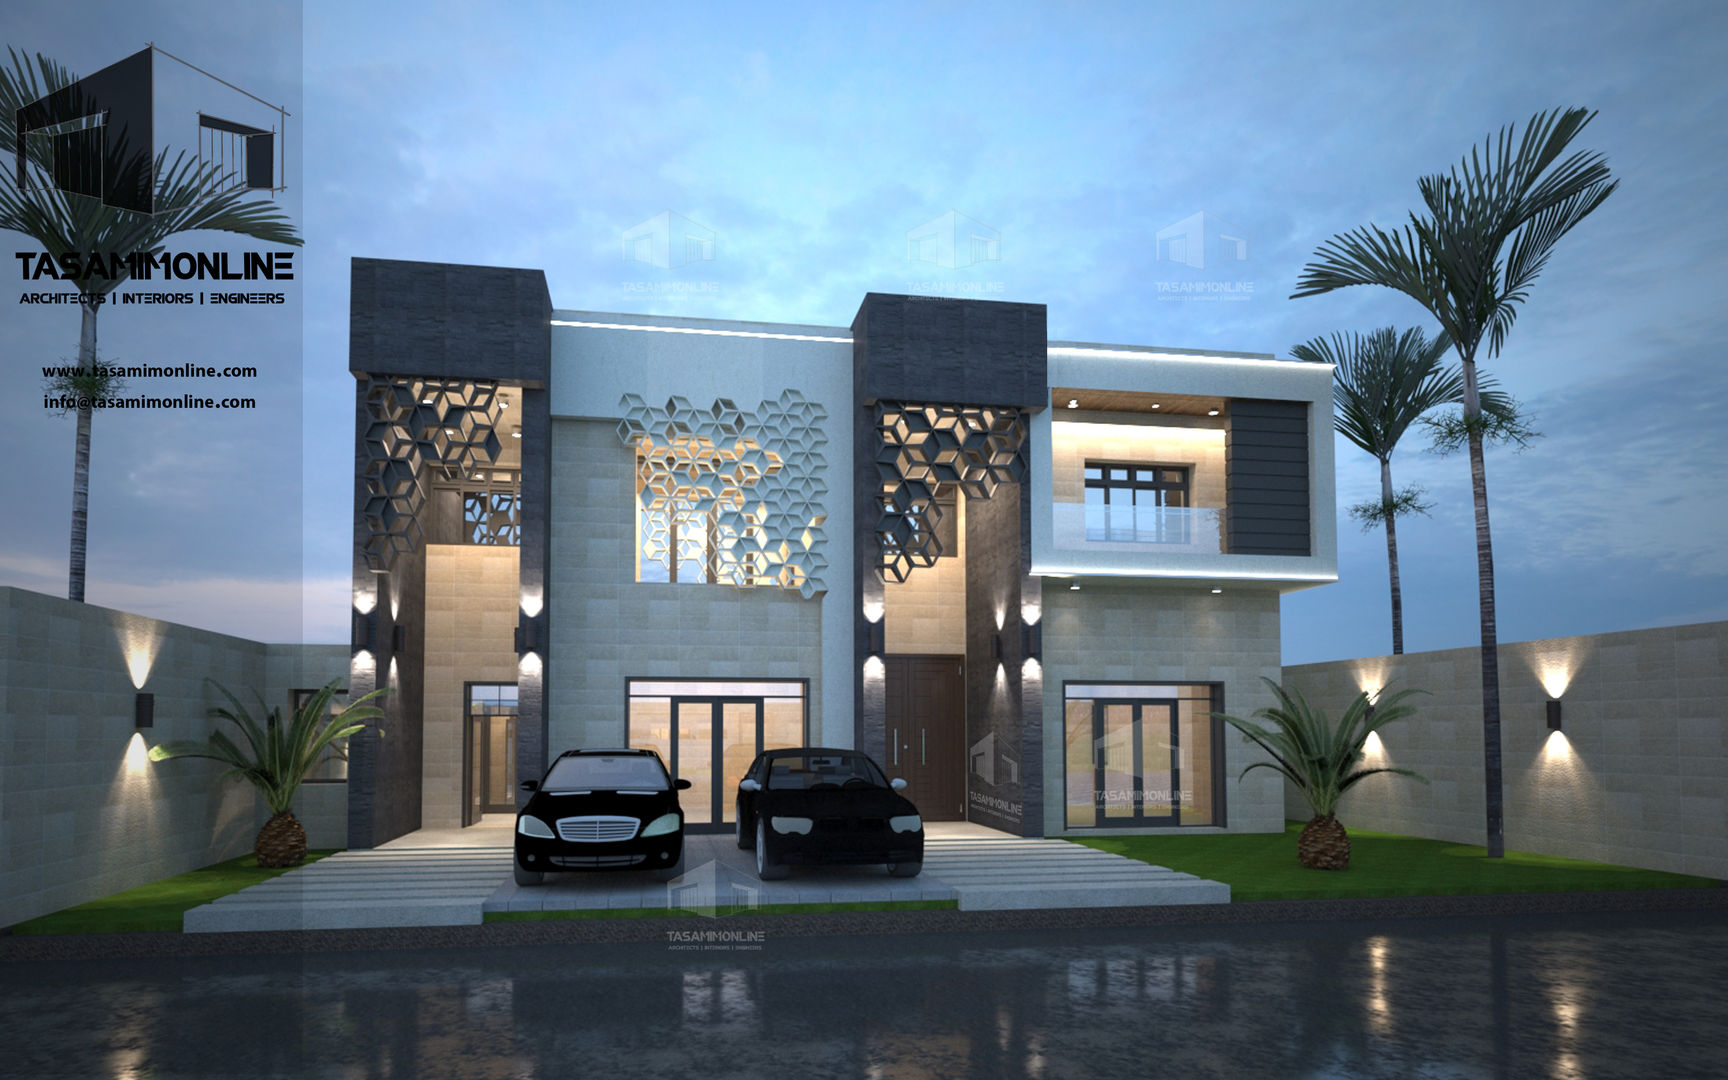 فيلا سكنية بمدينة جدة, Tasamim Online تصاميم أونلاين Tasamim Online تصاميم أونلاين